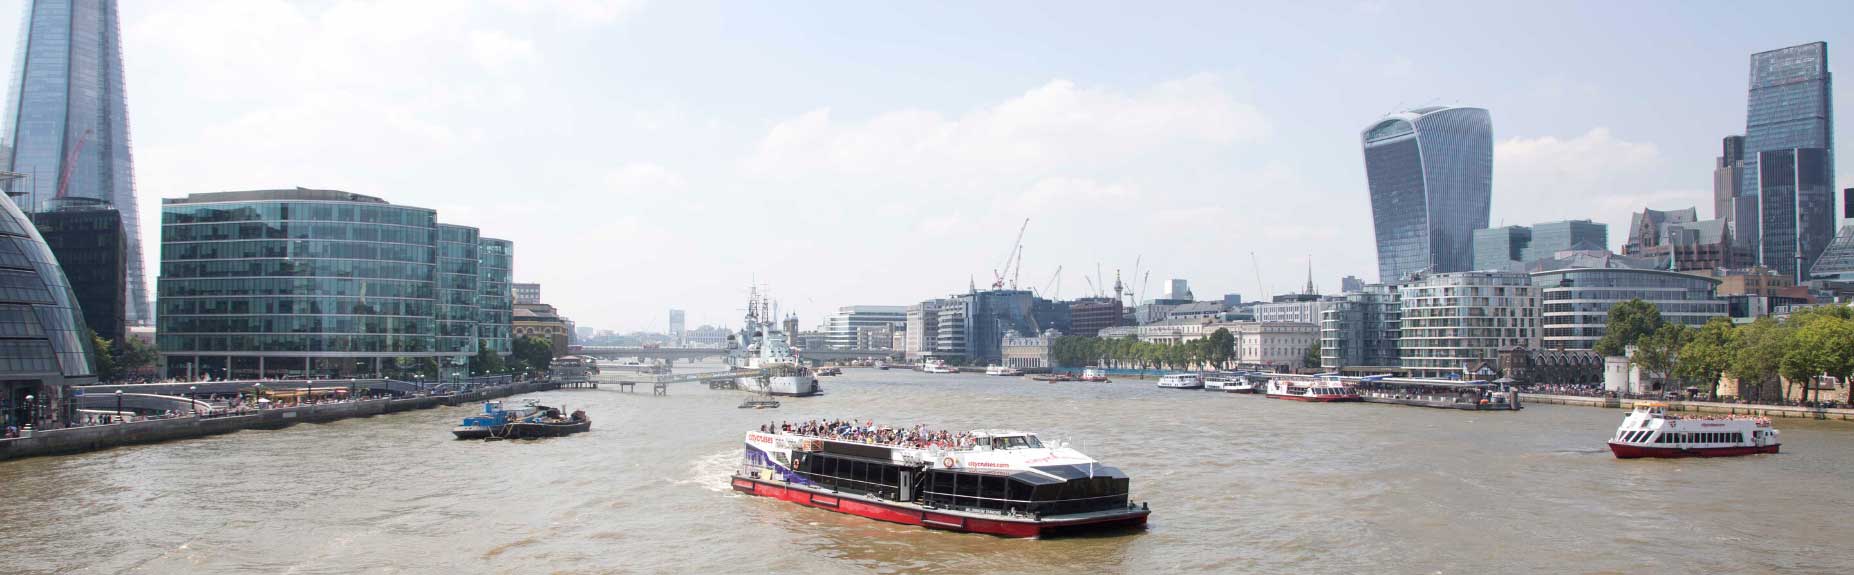 Boti mbili za City Cruise kwenye mto Thames city upande wowote